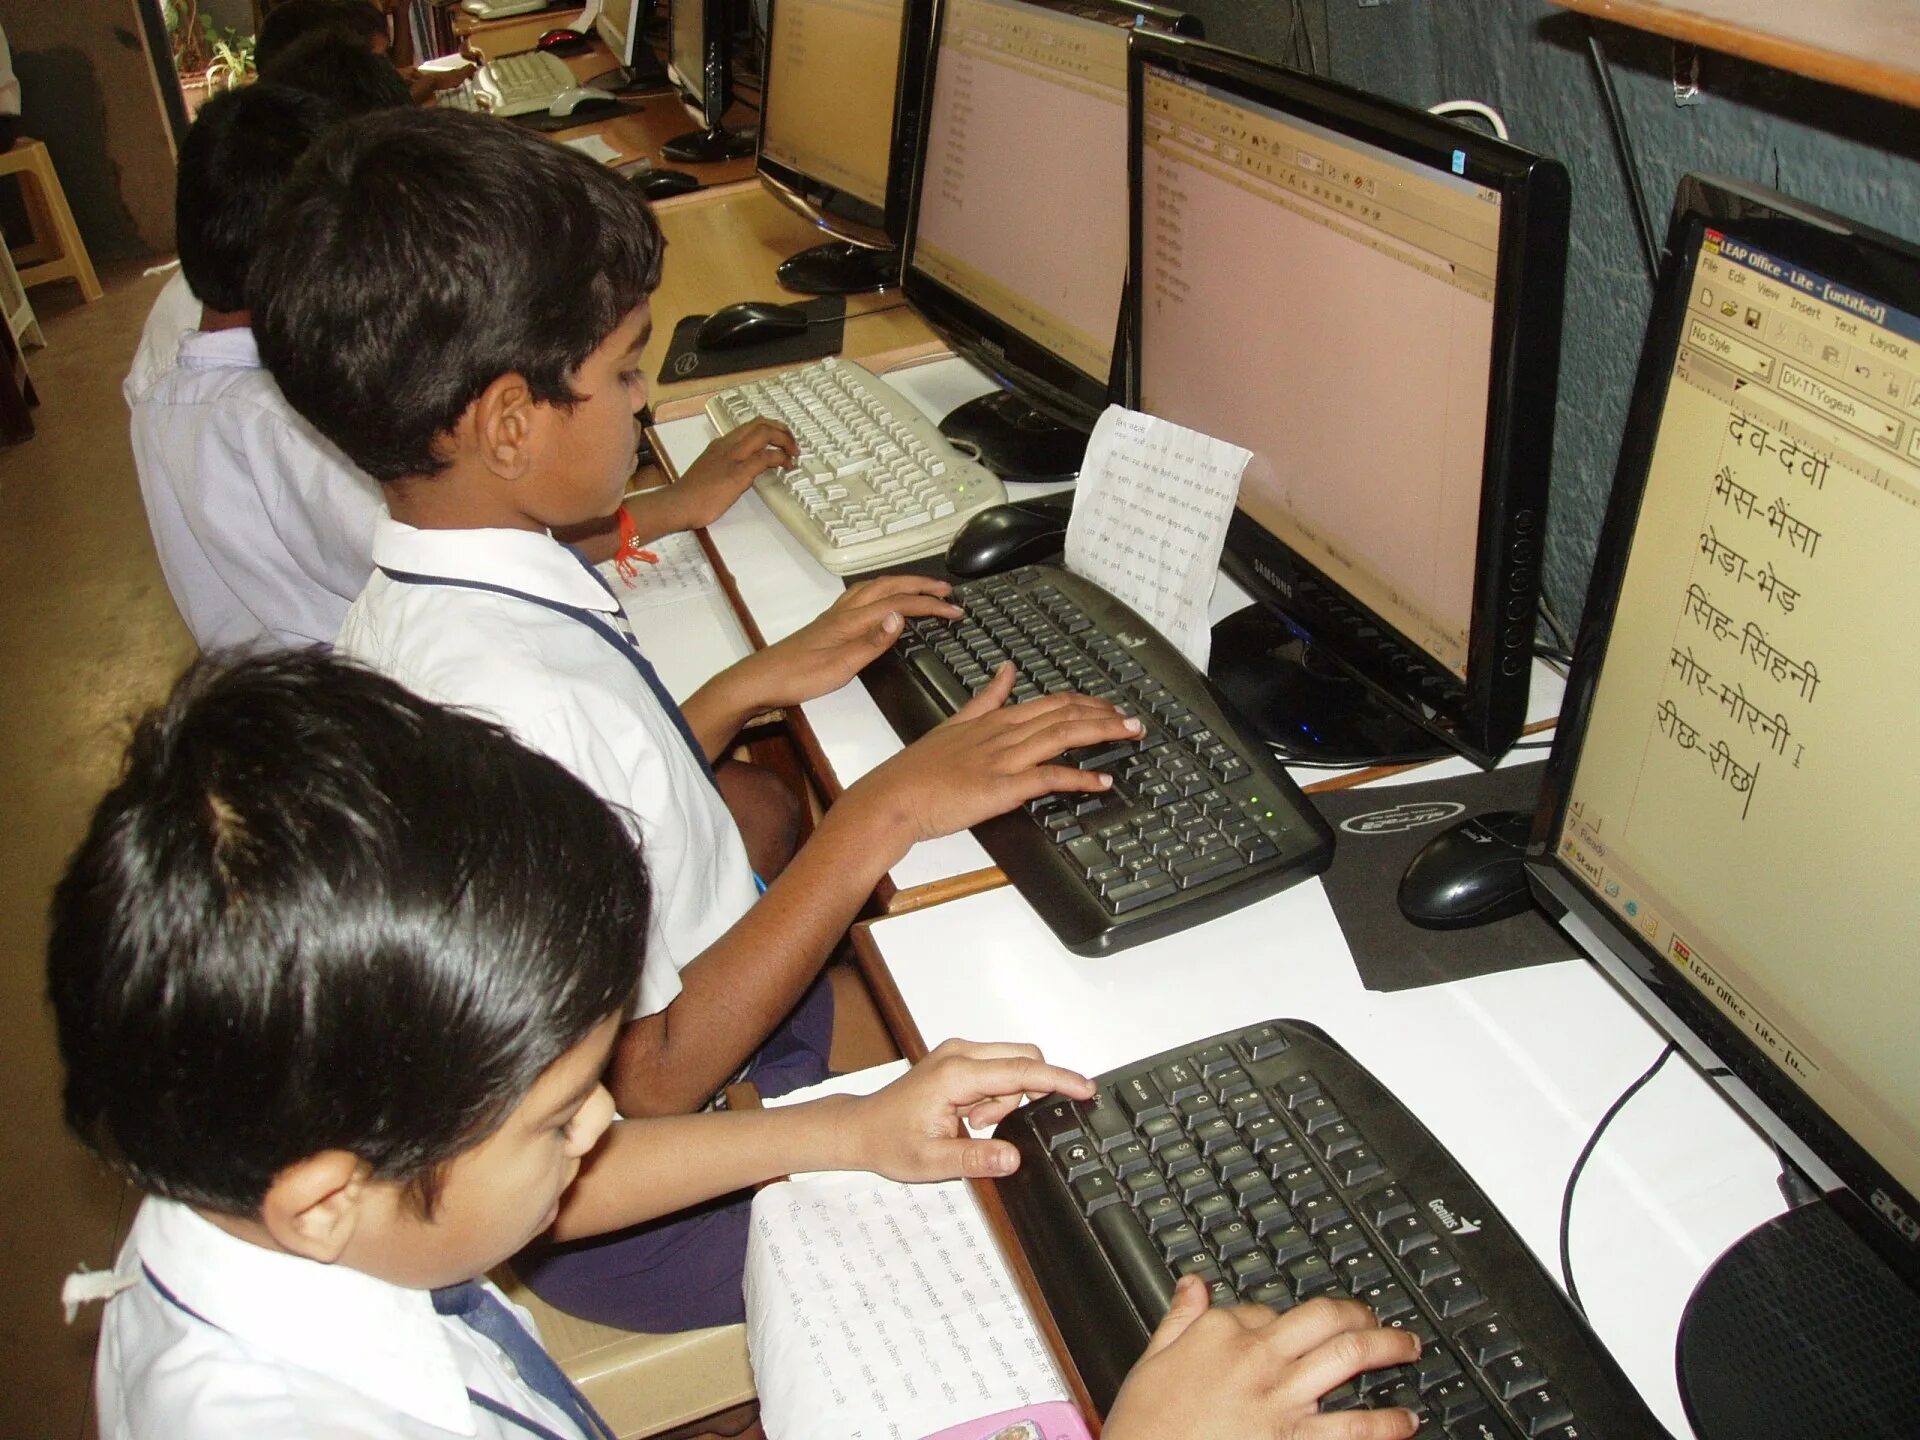 Comparing schools. Компьютер для детей. Индийские дети в школе. Компьютеры в образовании. Дети индусов с компьютером.